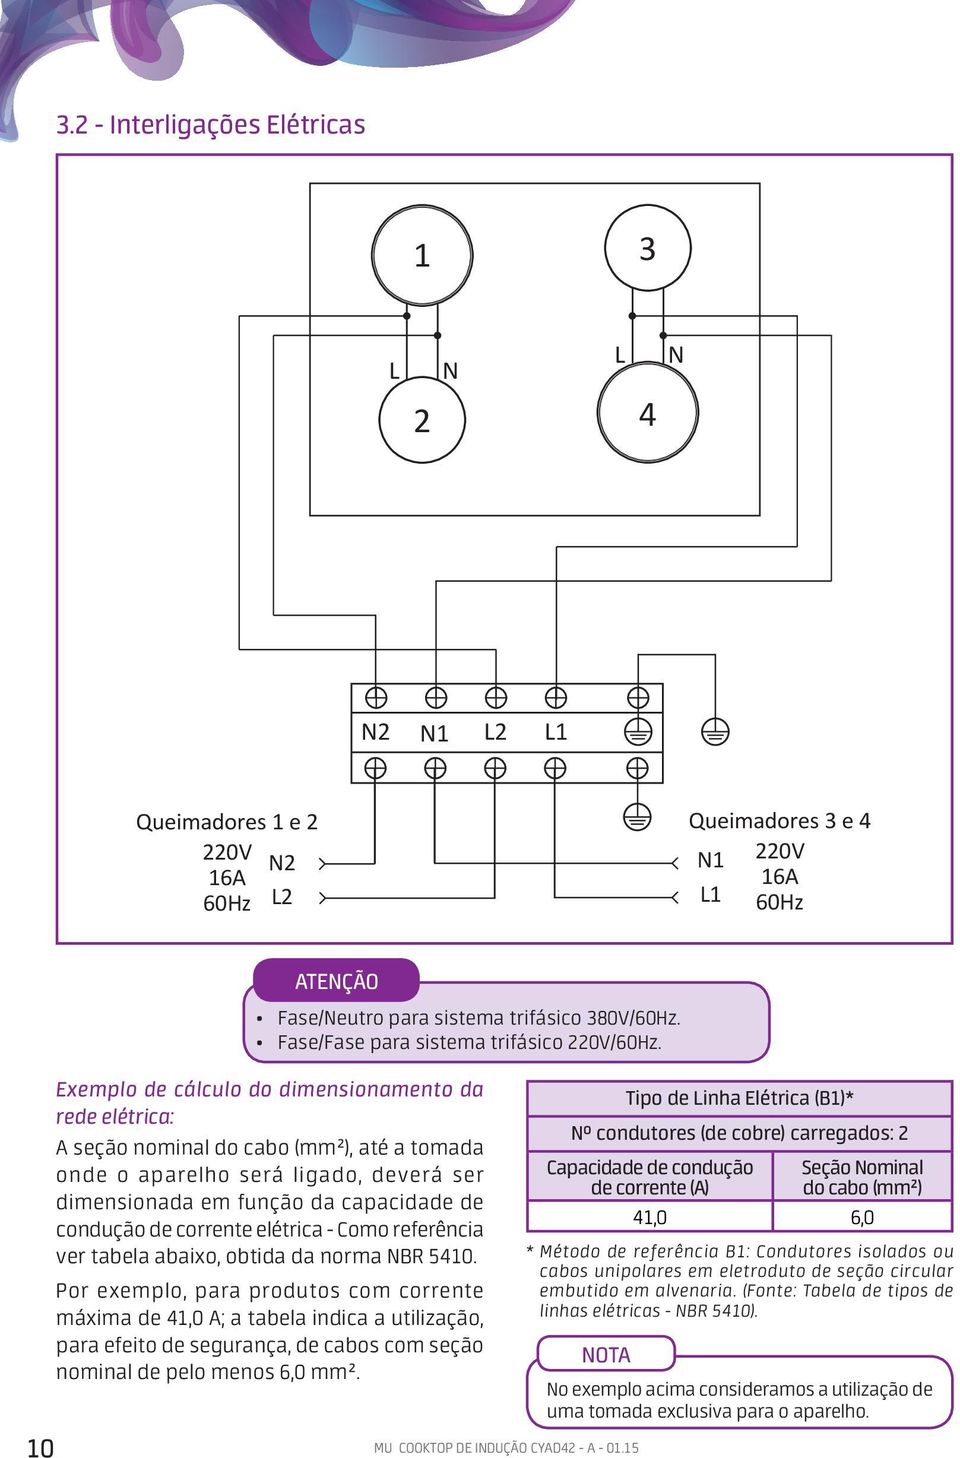 Exemplo de cálculo do dimensionamento da rede elétrica: A seção nominal do cabo (mm²), até a tomada onde o aparelho será ligado, deverá ser dimensionada em função da capacidade de condução de